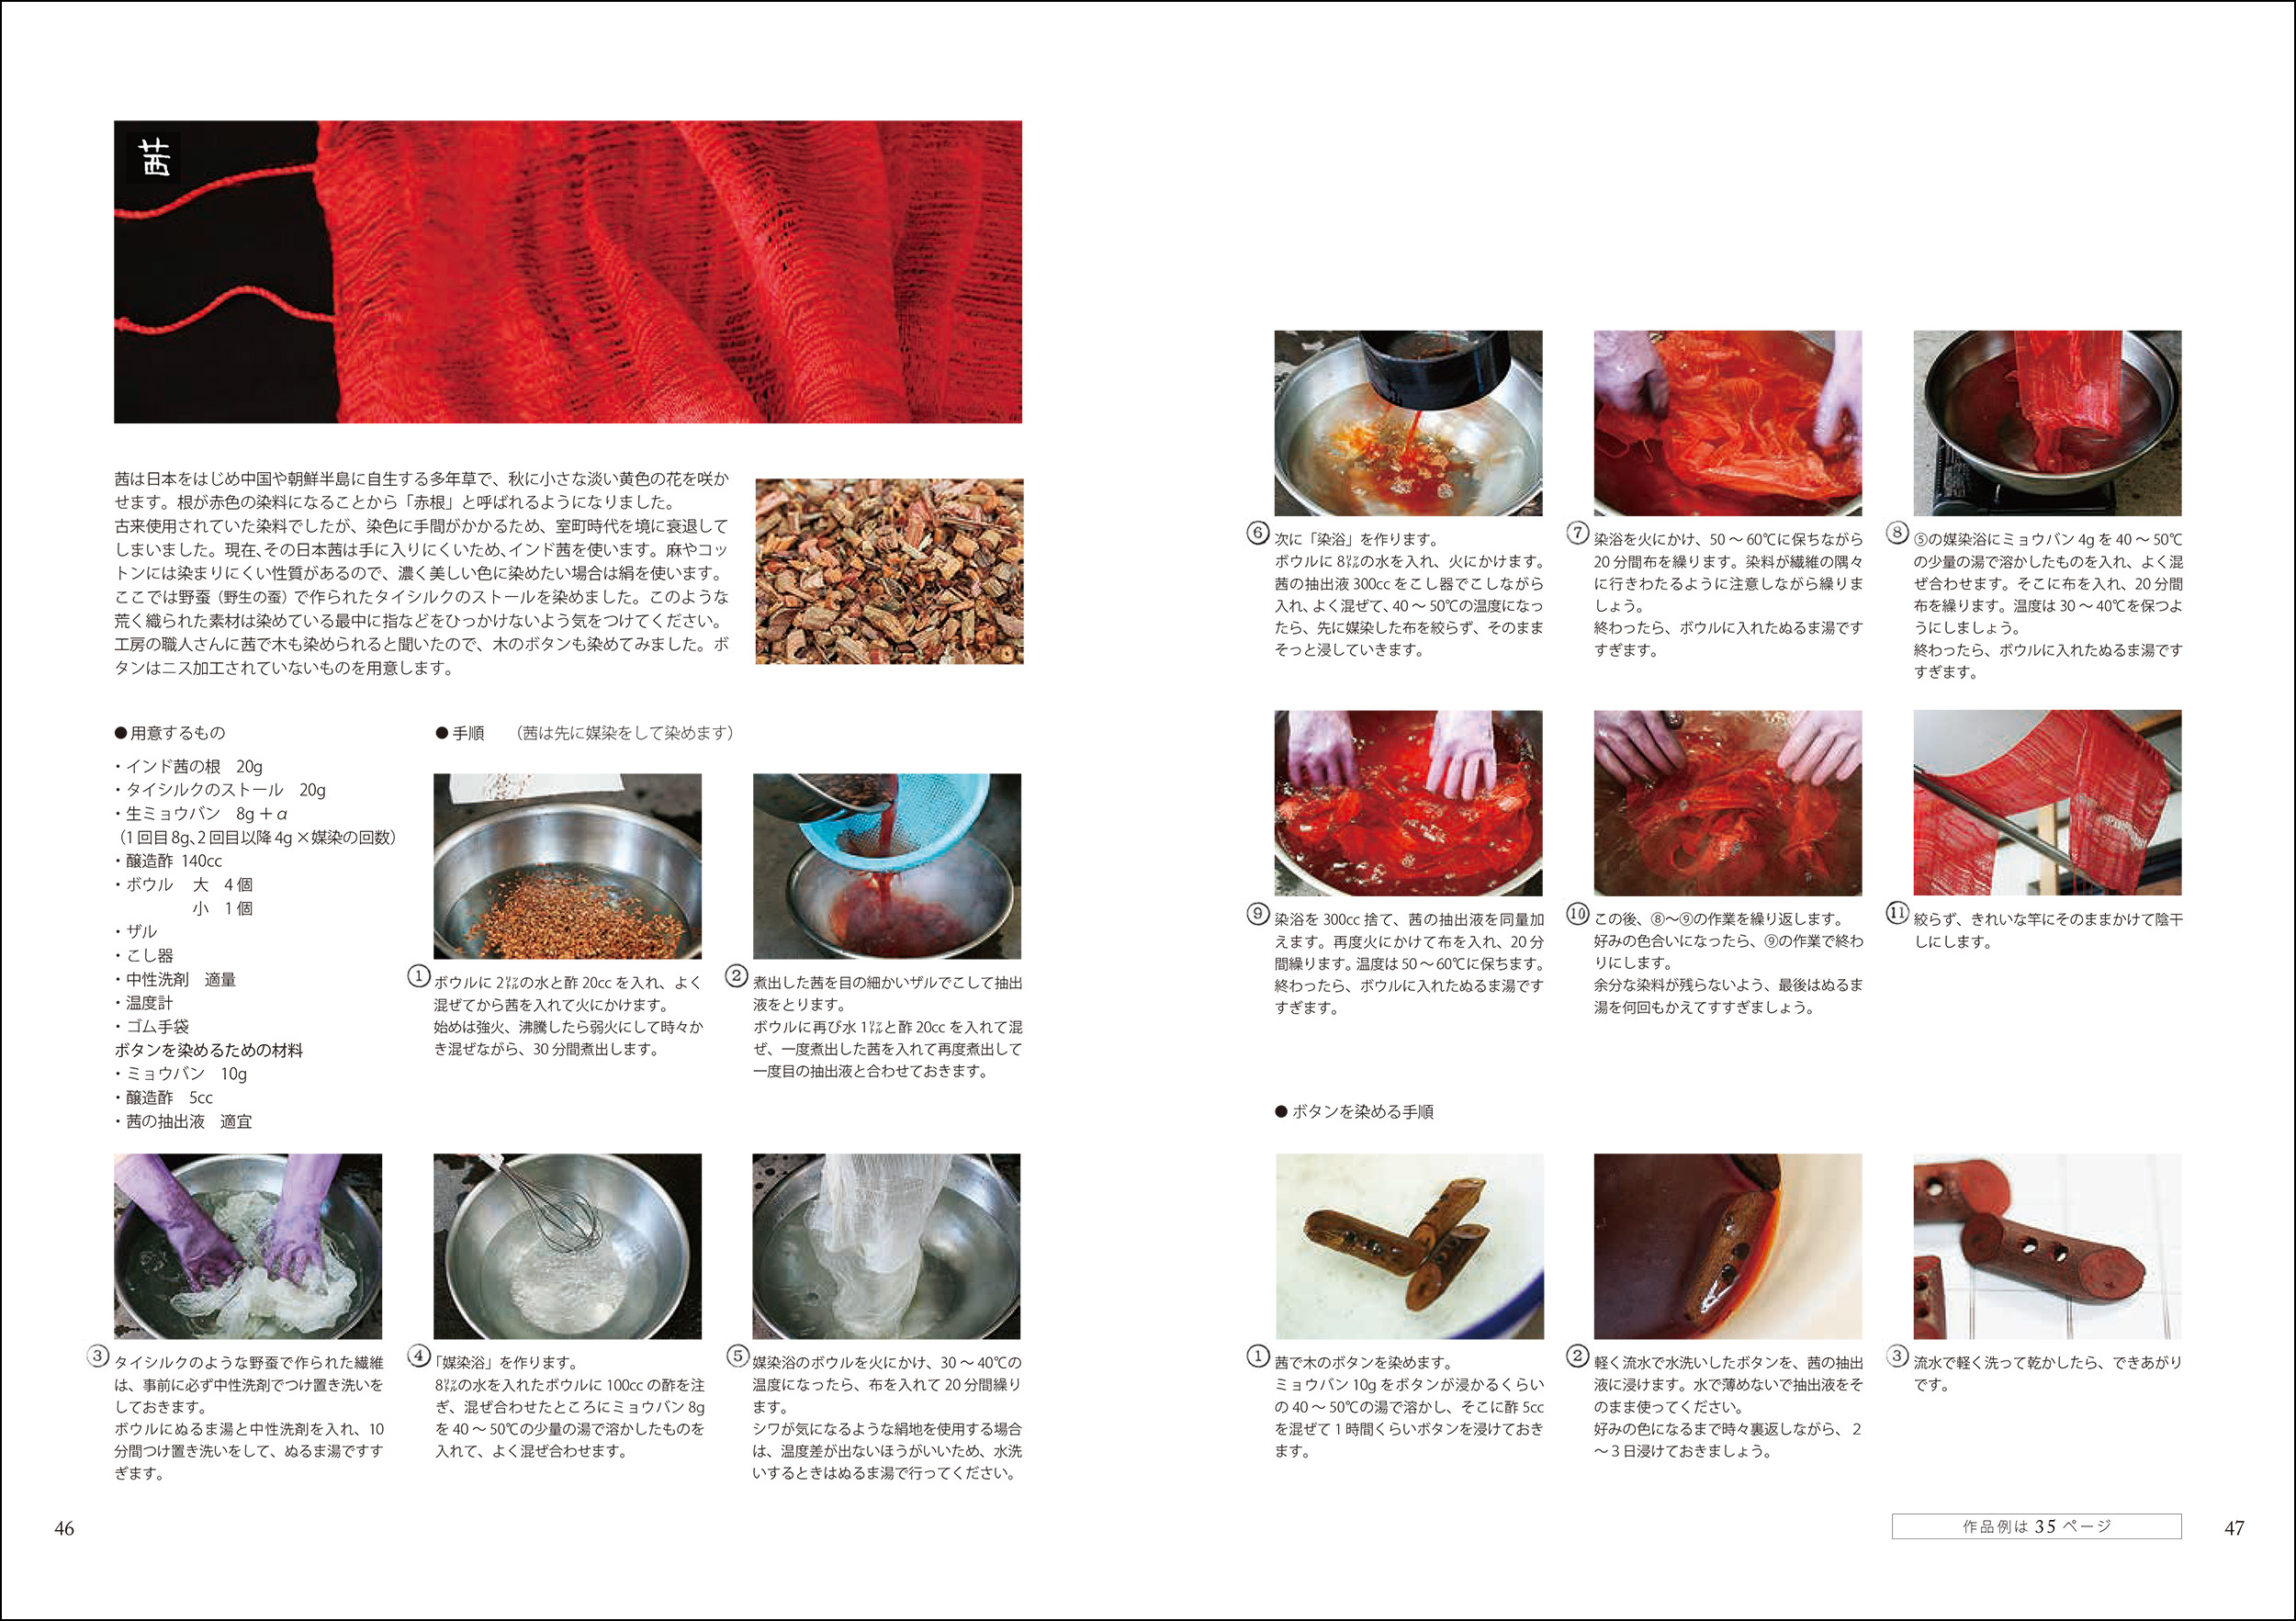 「情熱大陸」出演、吉岡更紗から“植物染め”を学ぶの画像